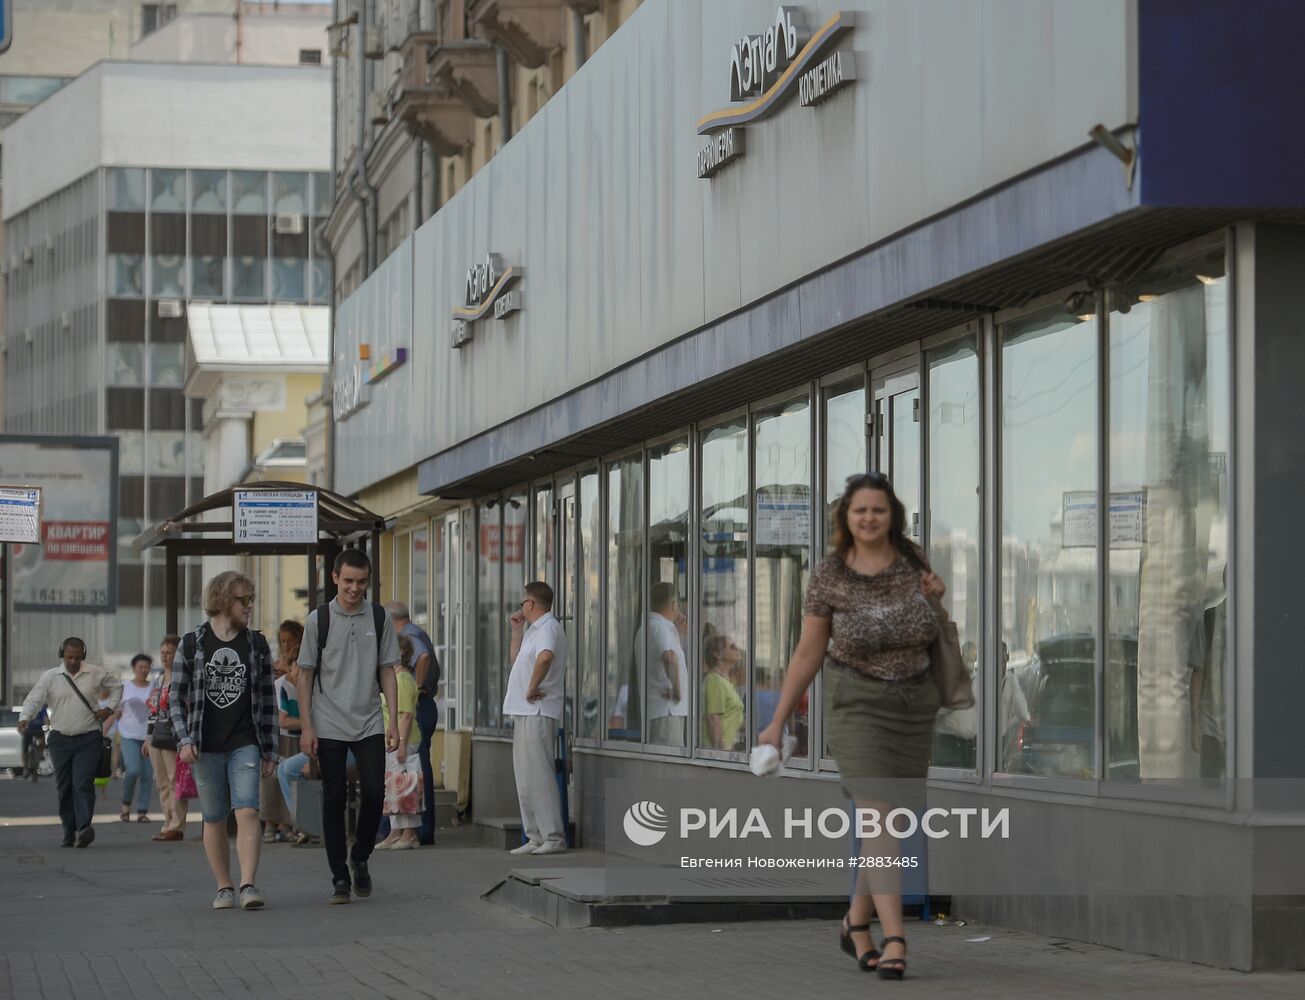 Власти Москвы объявили новый список объектов самостроя, подлежащих сносу